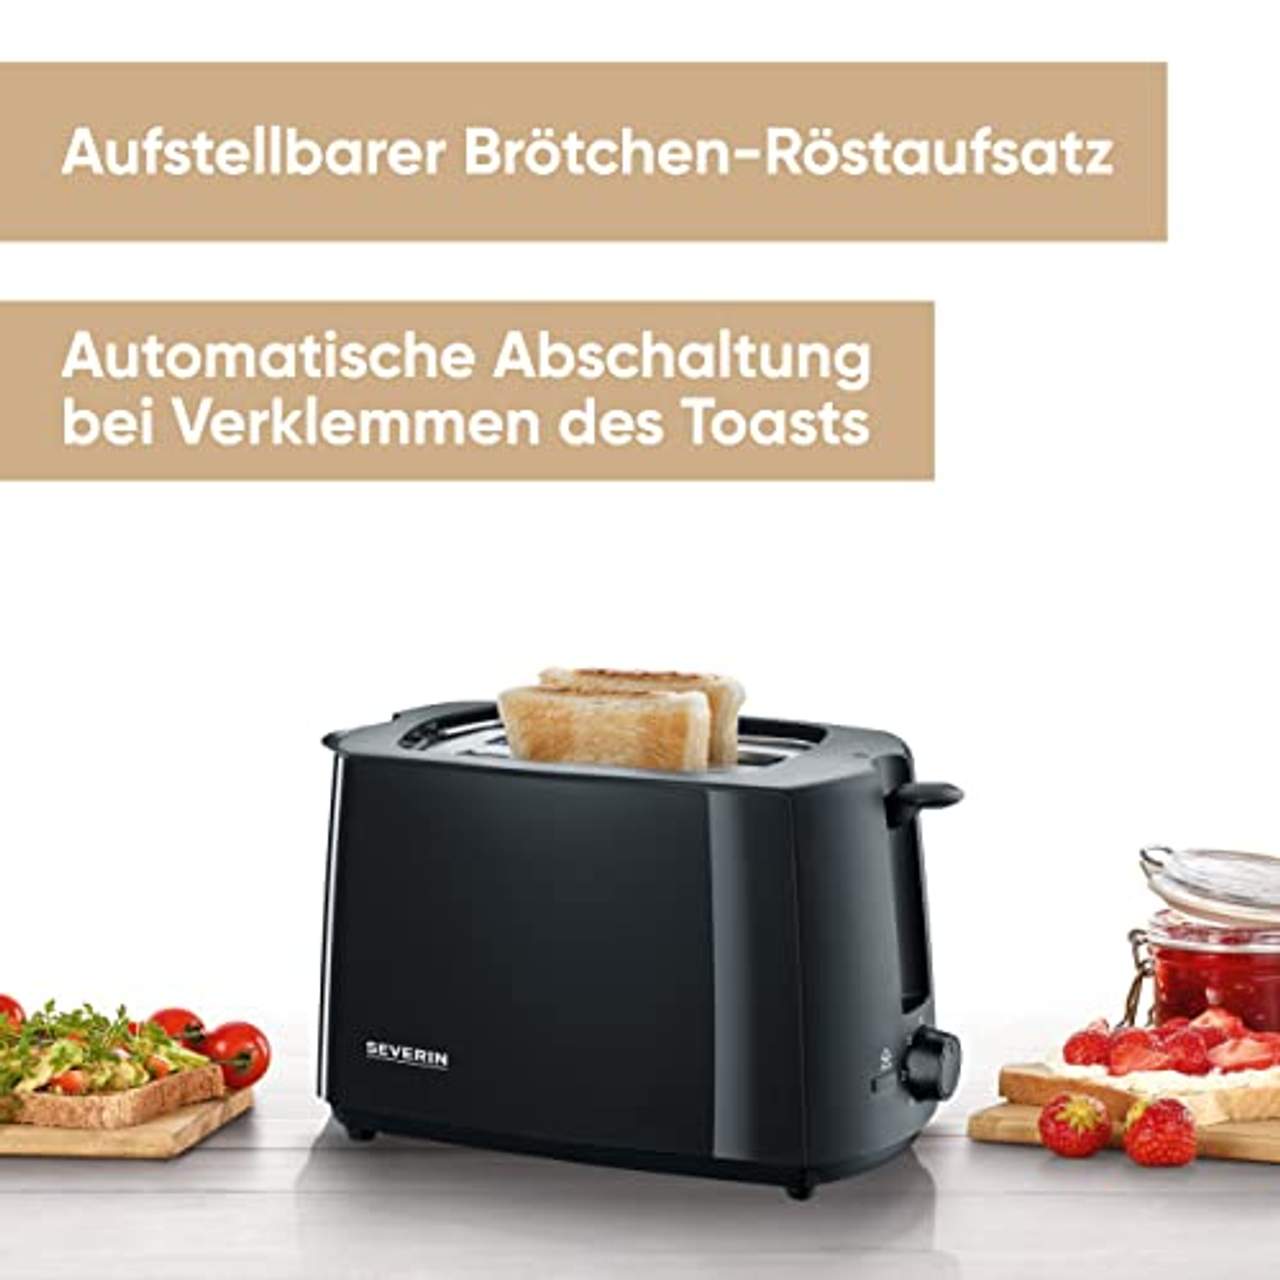 SEVERIN Automatik-Toaster Inkl Brötchen-Röstaufsatz